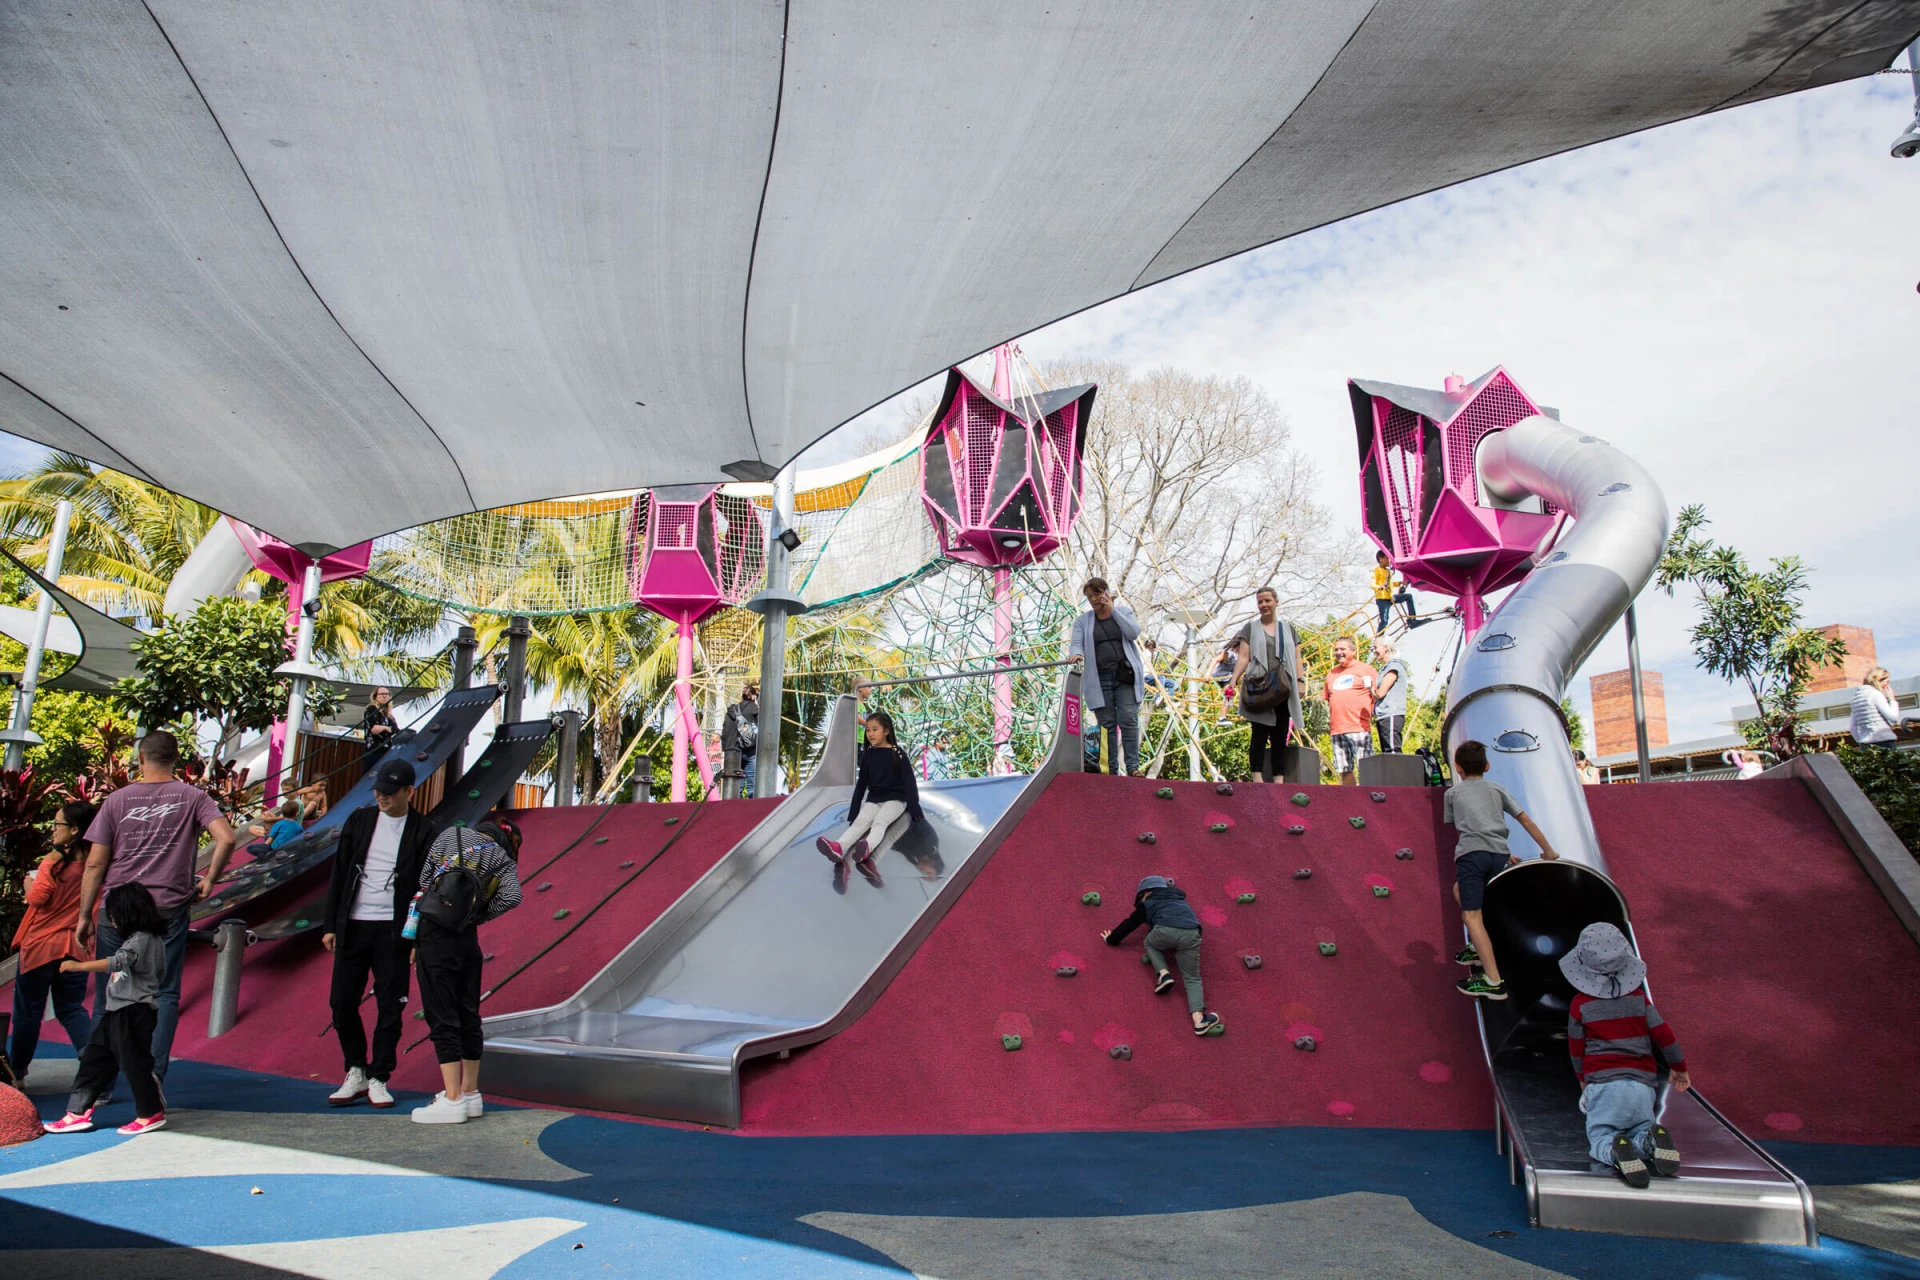 Parque infantil en Australia con sombreado instalado para proteger del calor.